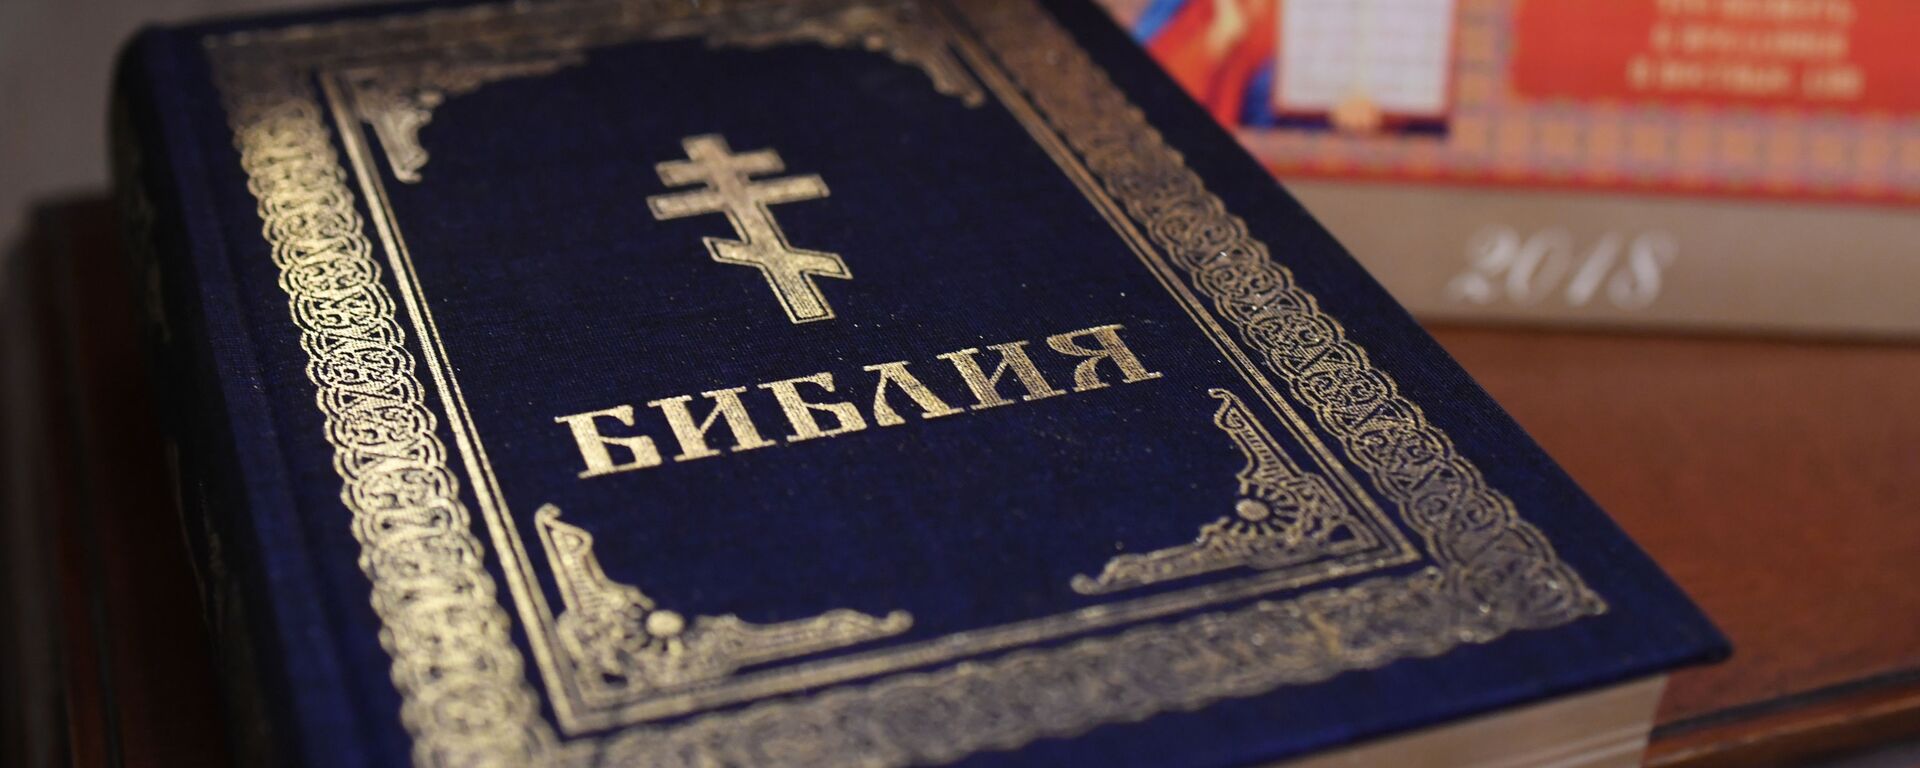 Библия. Архивное фото - Sputnik Южная Осетия, 1920, 29.05.2021